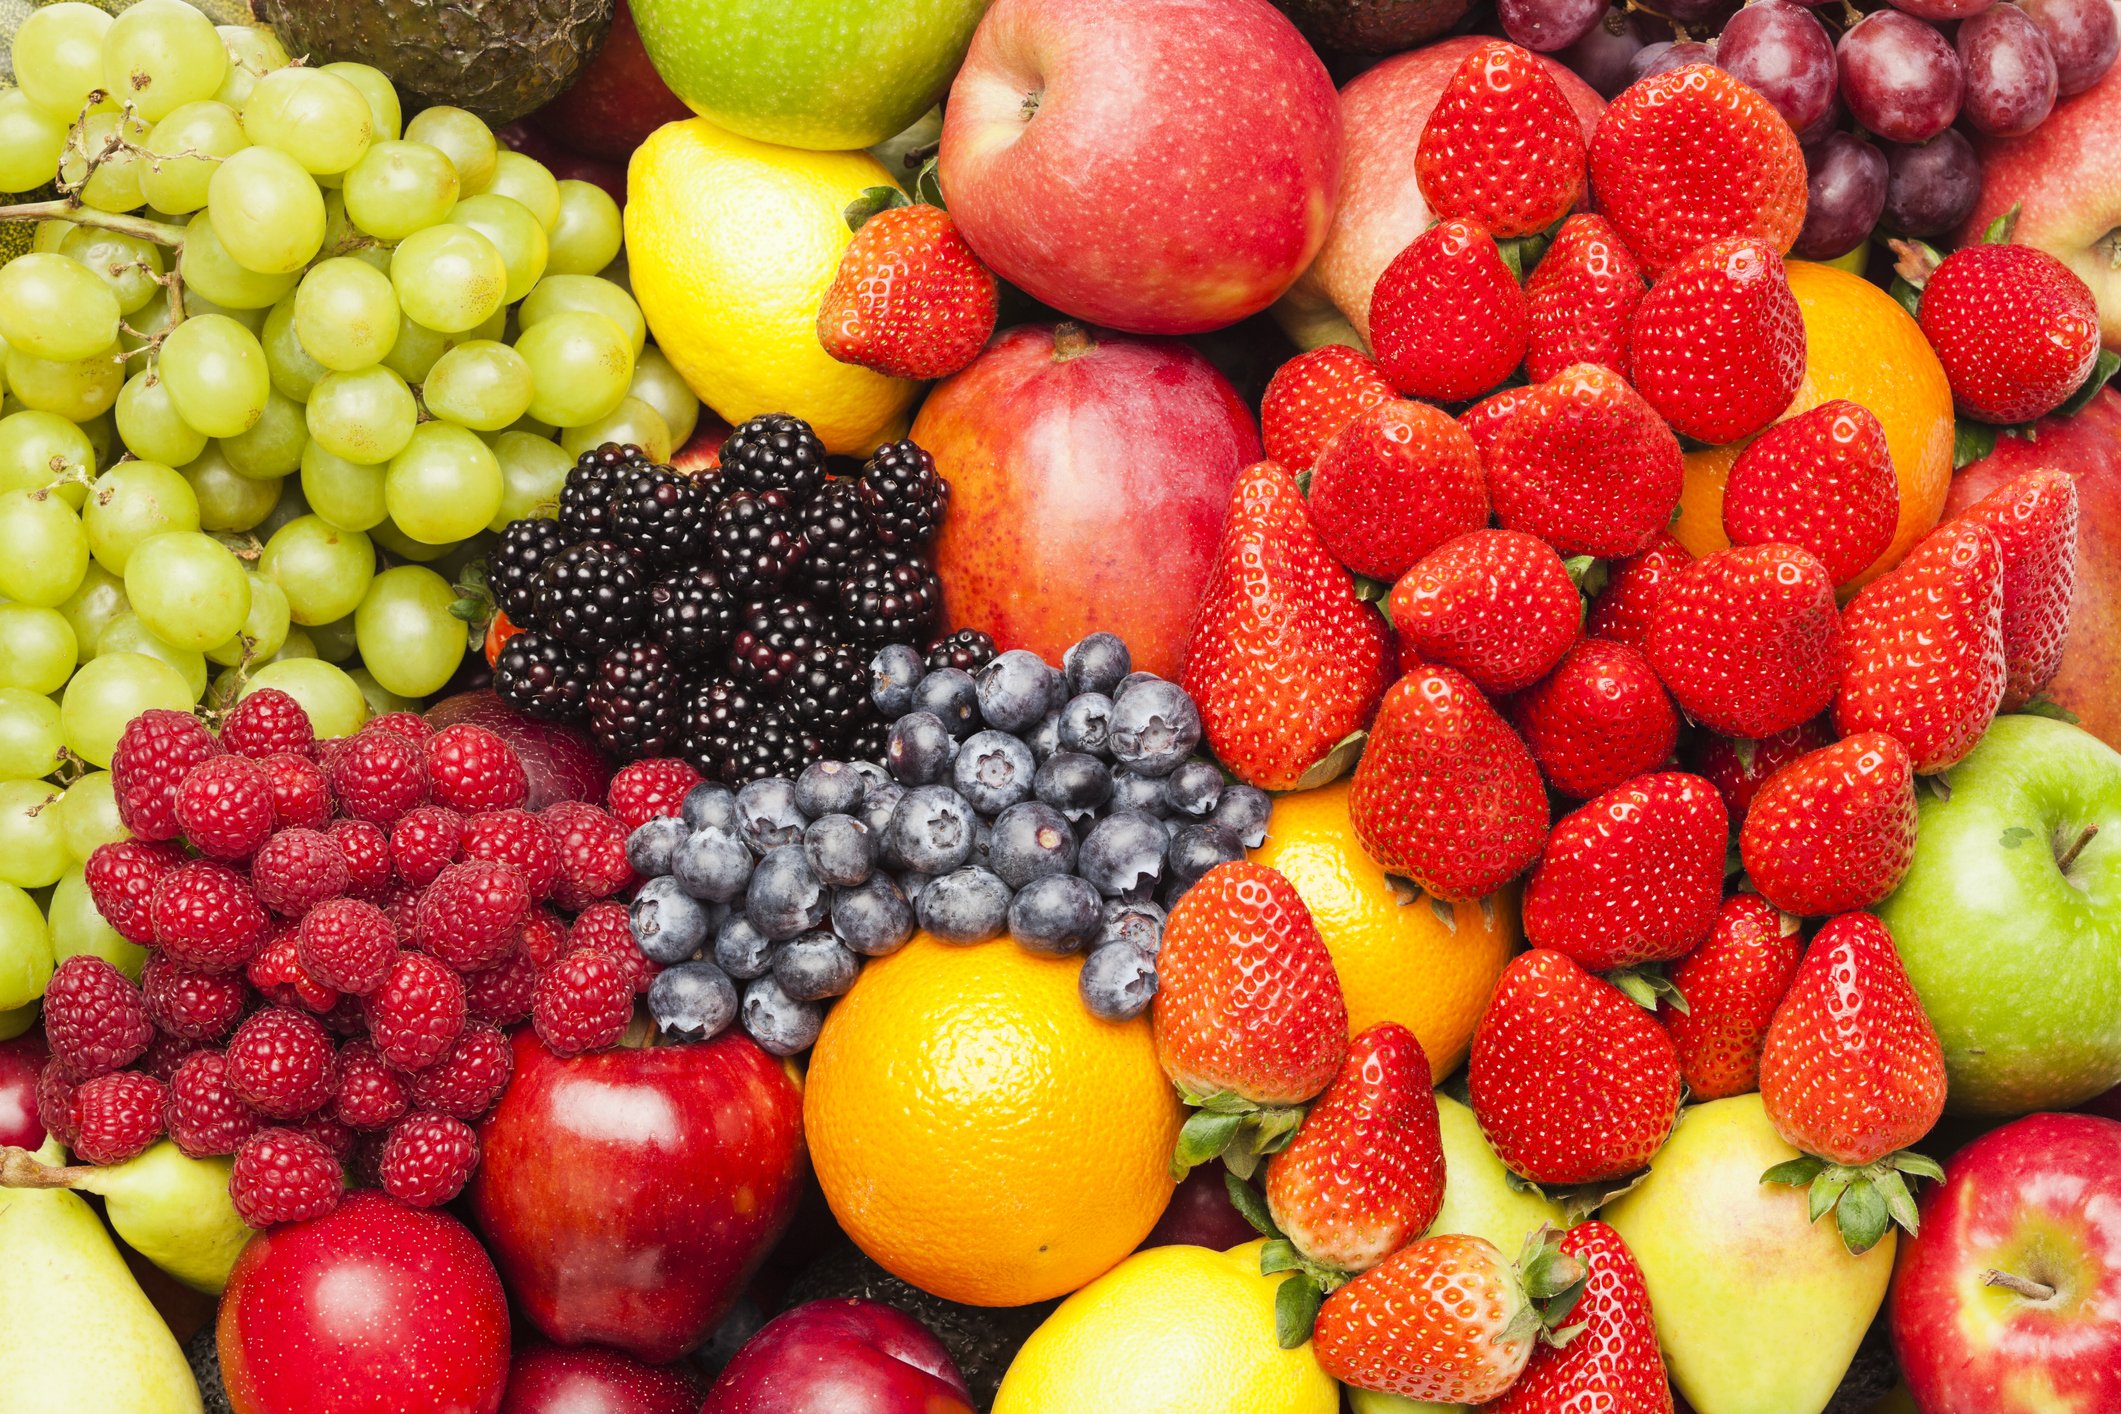 Καλοκαιρινά φρούτα: Πόσες θερμίδες έχει το καθένα και ποιο να επιλέξεις αν κάνεις δίαιτα